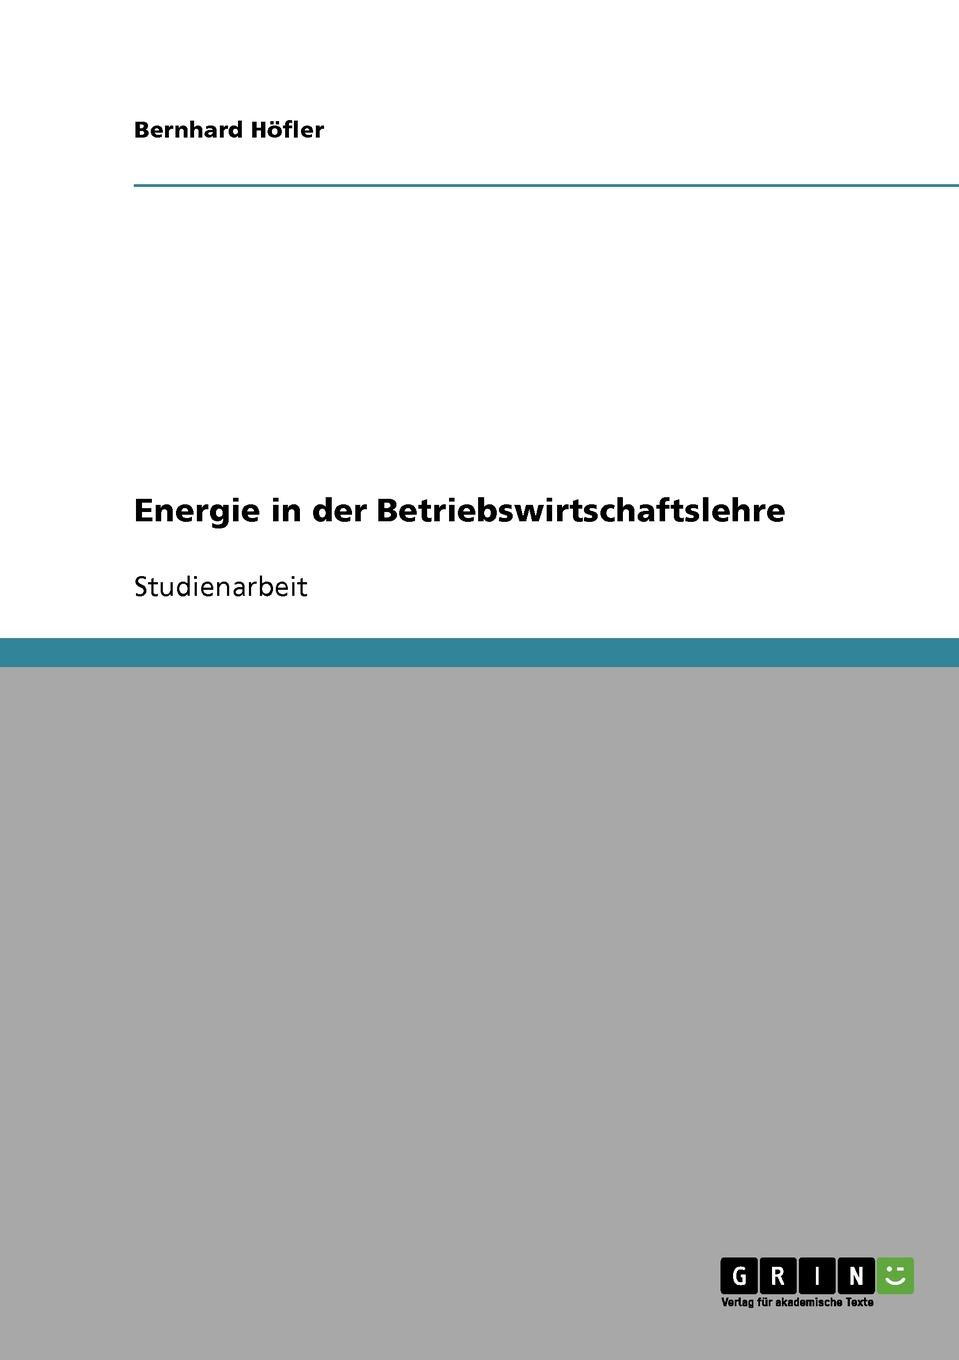 Bernhard Höfler Energie in der Betriebswirtschaftslehre